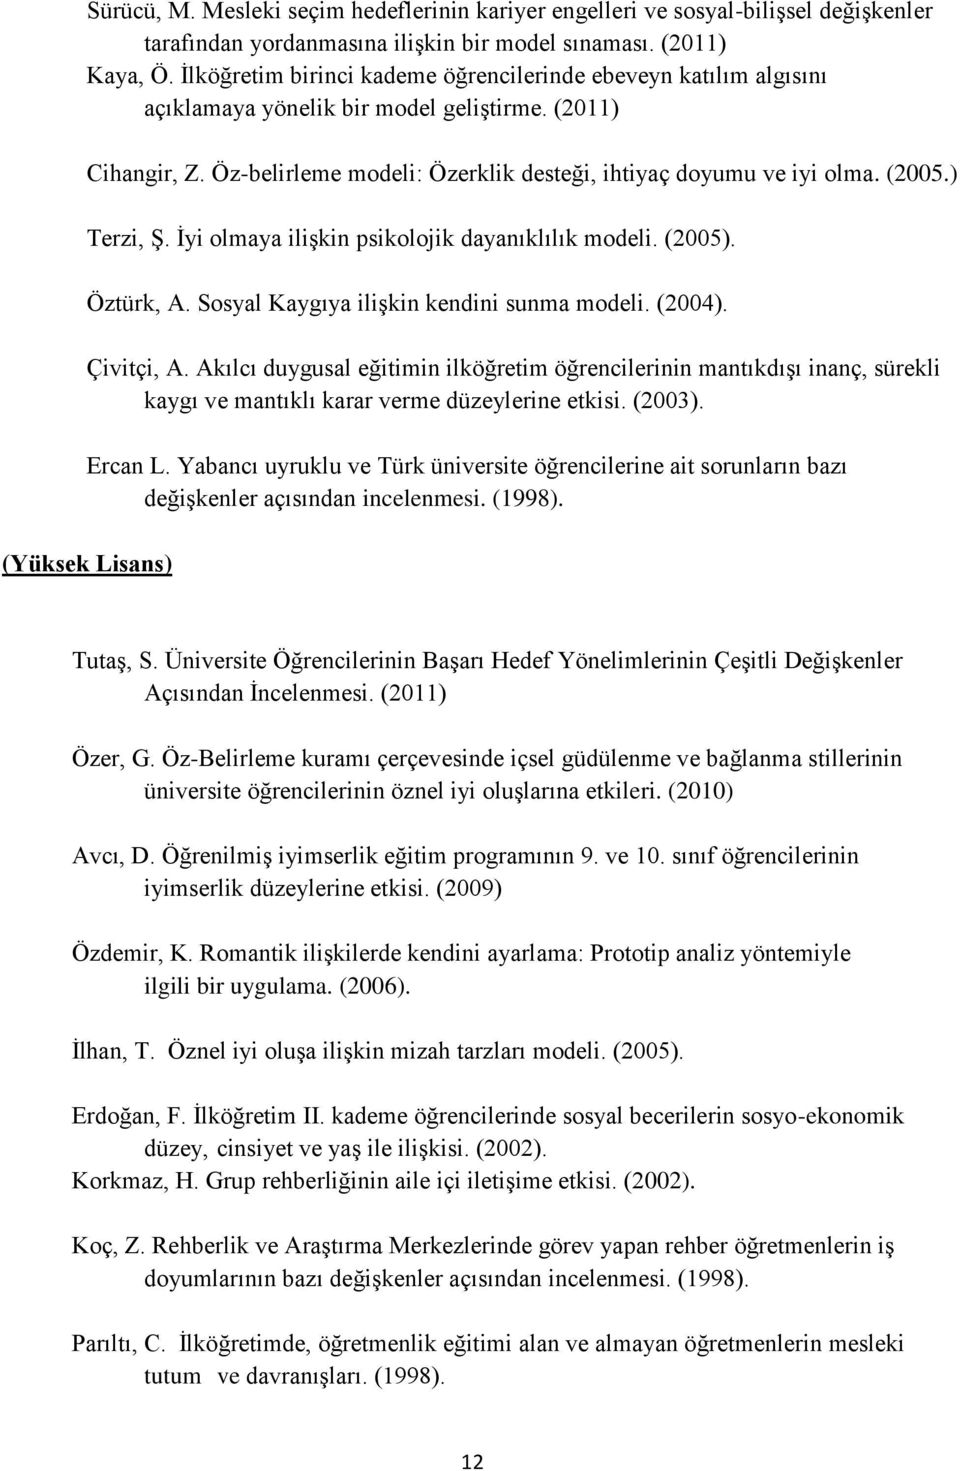 ) Terzi, ġ. Ġyi olmaya iliģkin psikolojik dayanıklılık modeli. (2005). Öztürk, A. Sosyal Kaygıya iliģkin kendini sunma modeli. (2004). Çivitçi, A.